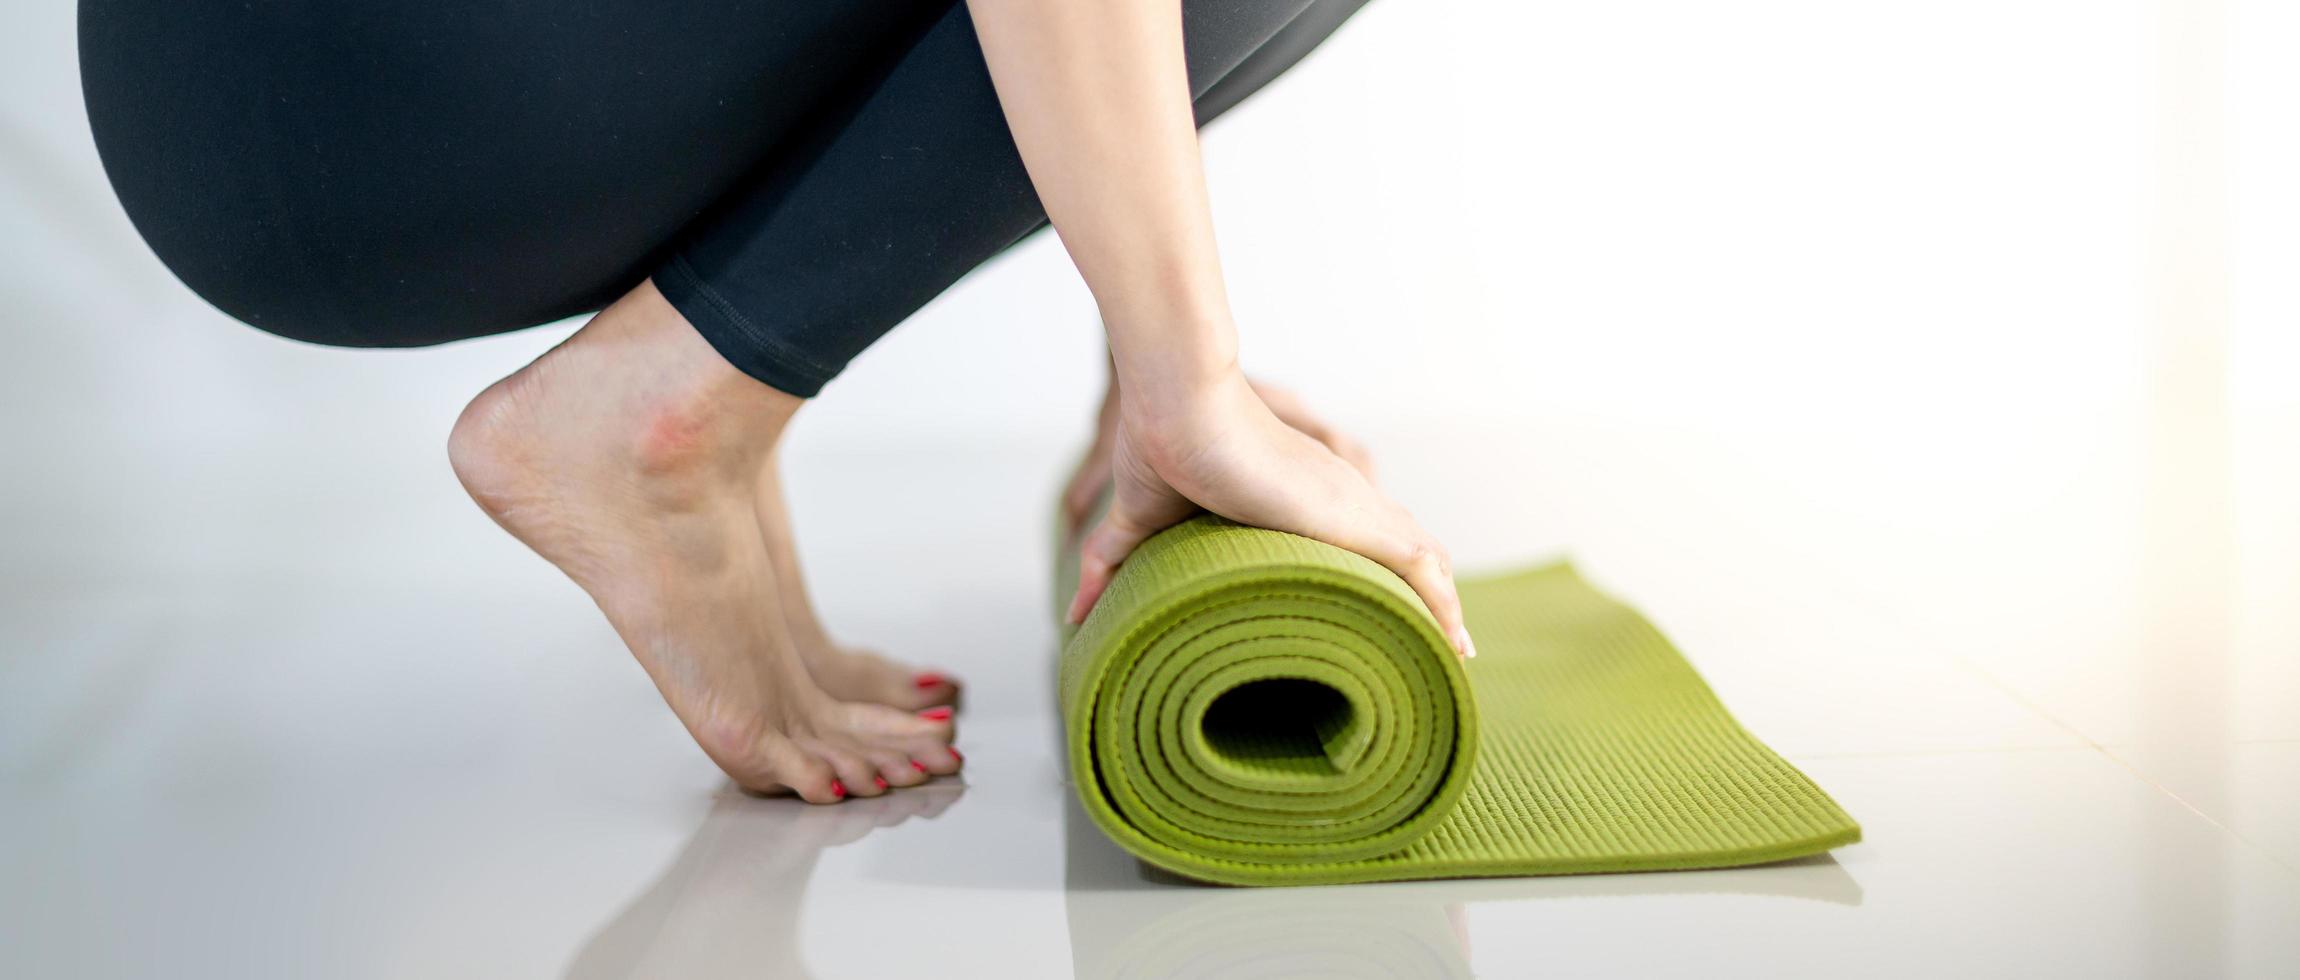 mano femenina rodando colchoneta de yoga verde para preparar ejercicio en la colchoneta. foto